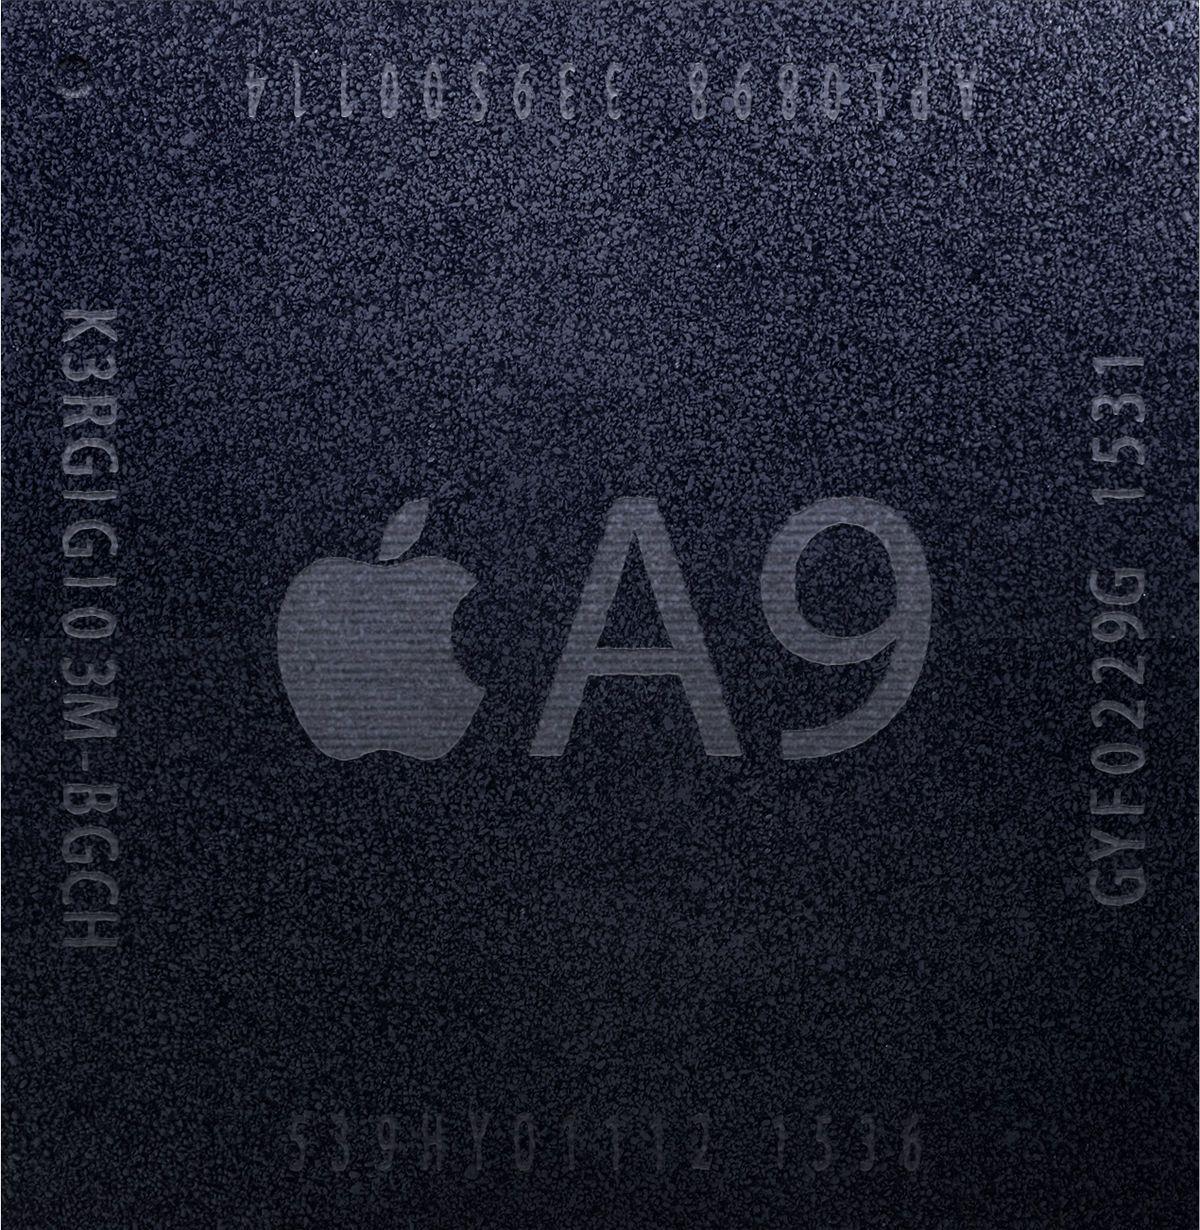 A9 Logo - Apple A9